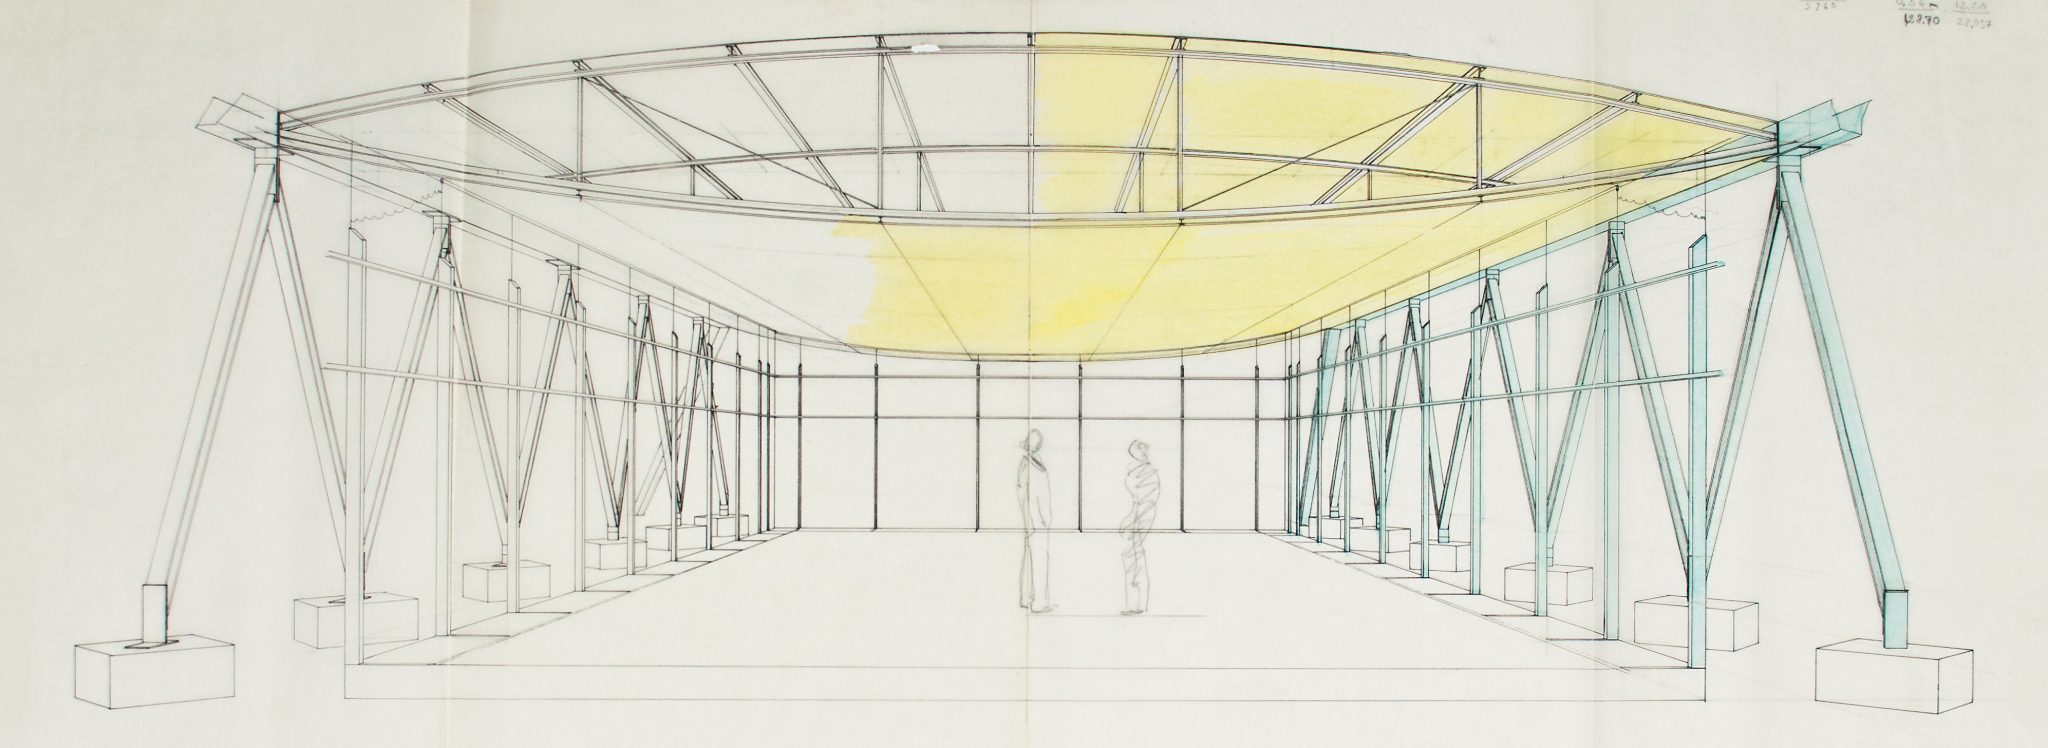 Entwurfszeichnung für den Tecta-Pavillon, 1985